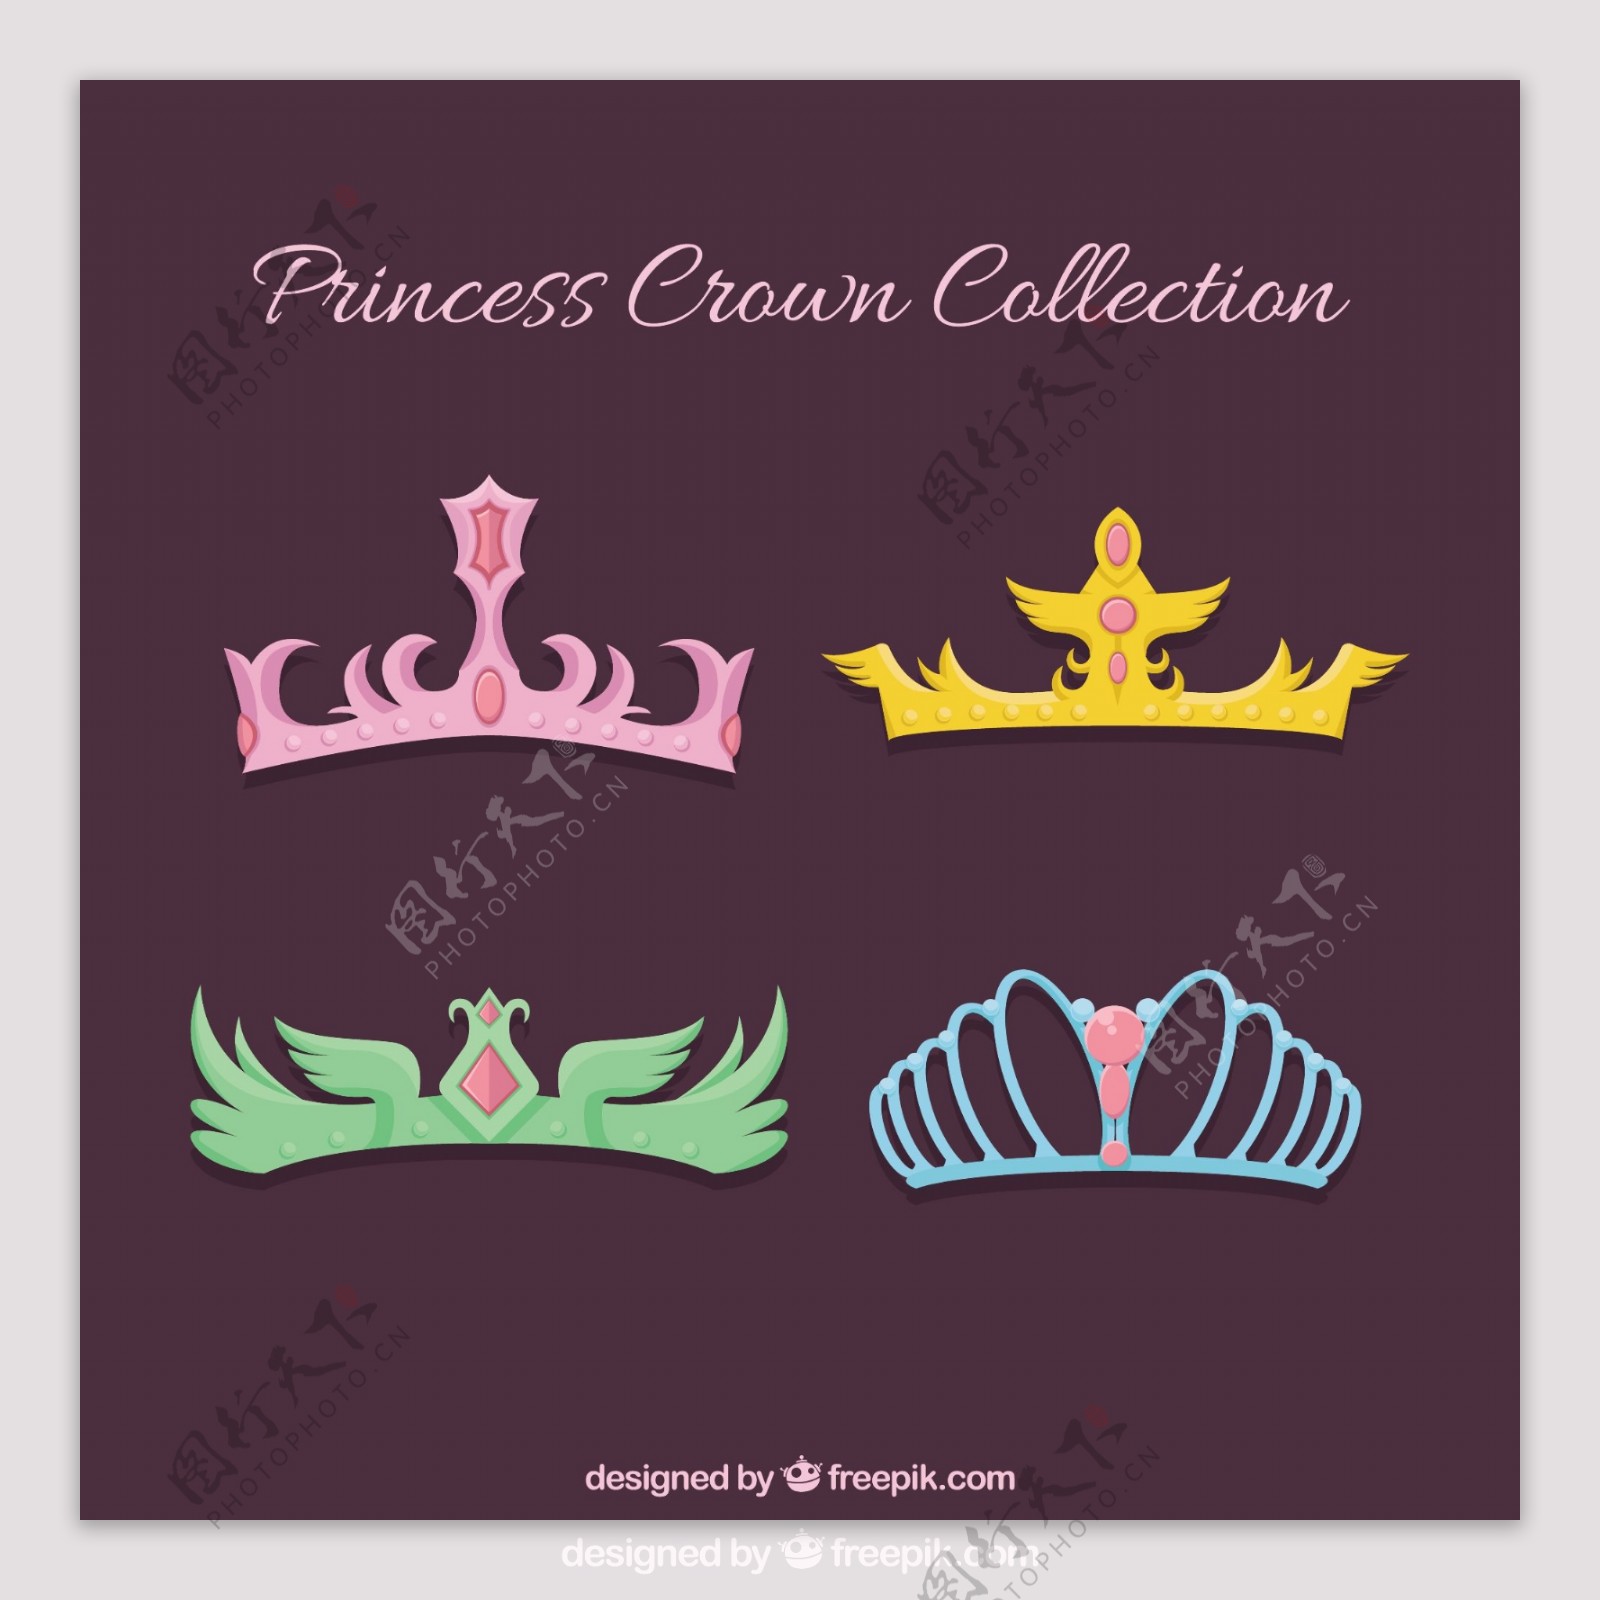 不同颜色设计的公主冠图标